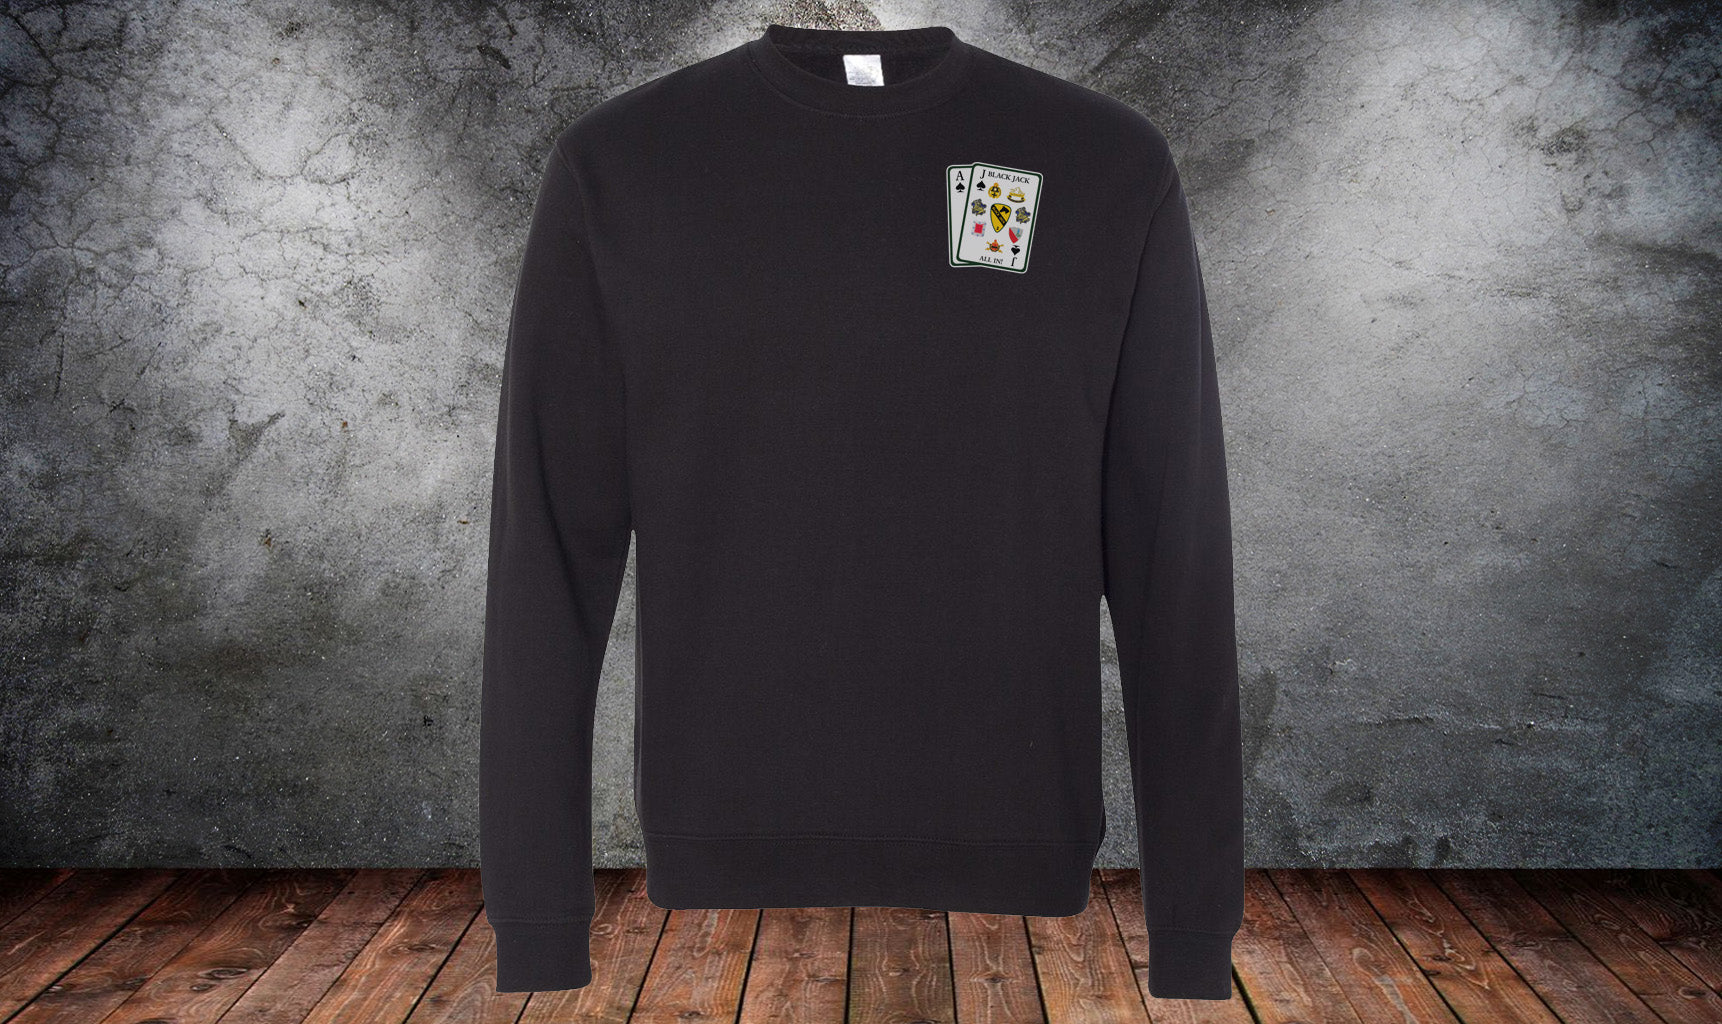 Black Jack All In Cards Sweatshirt